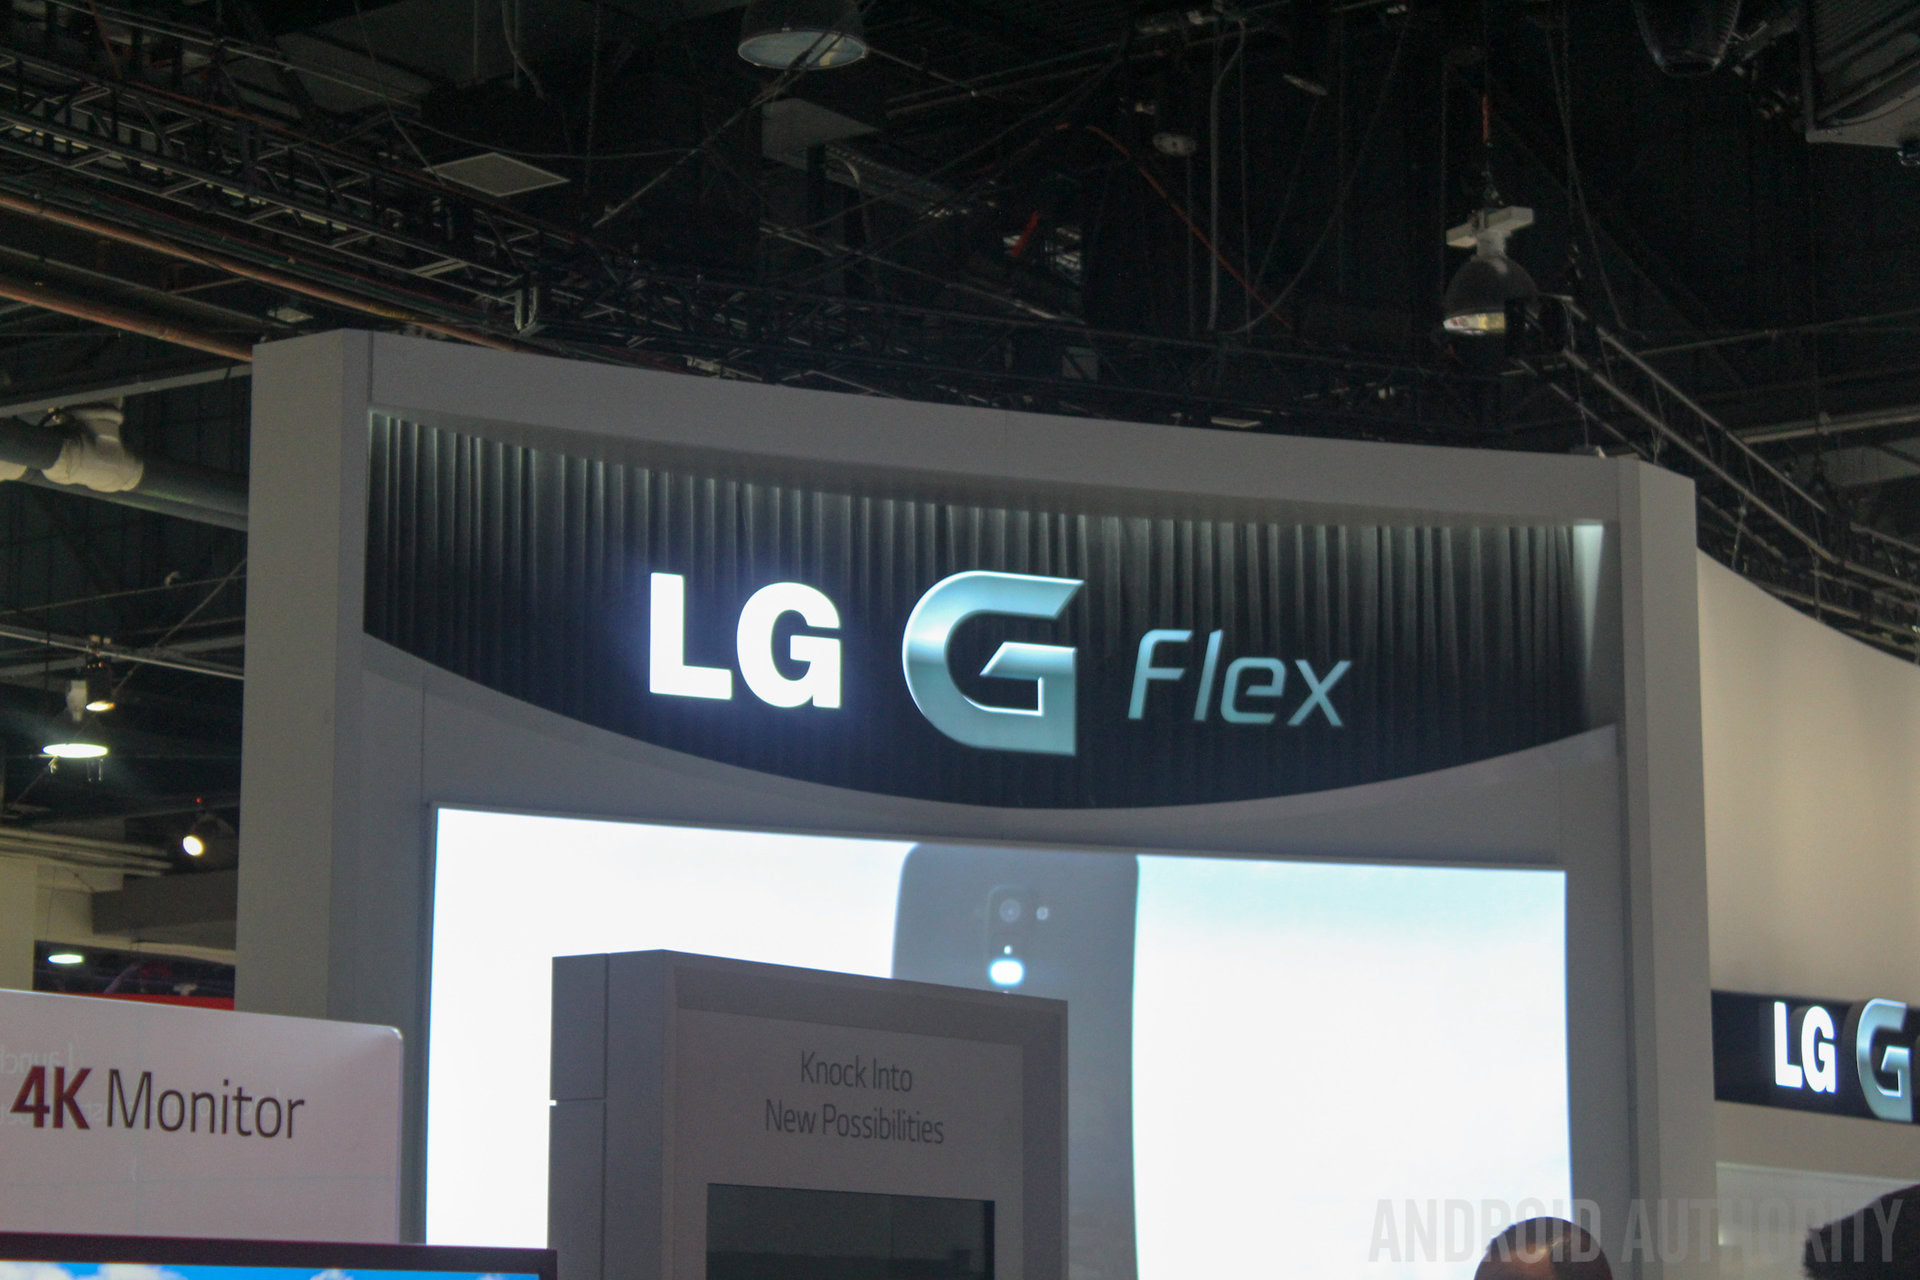 LG G Flex CES 2014-1